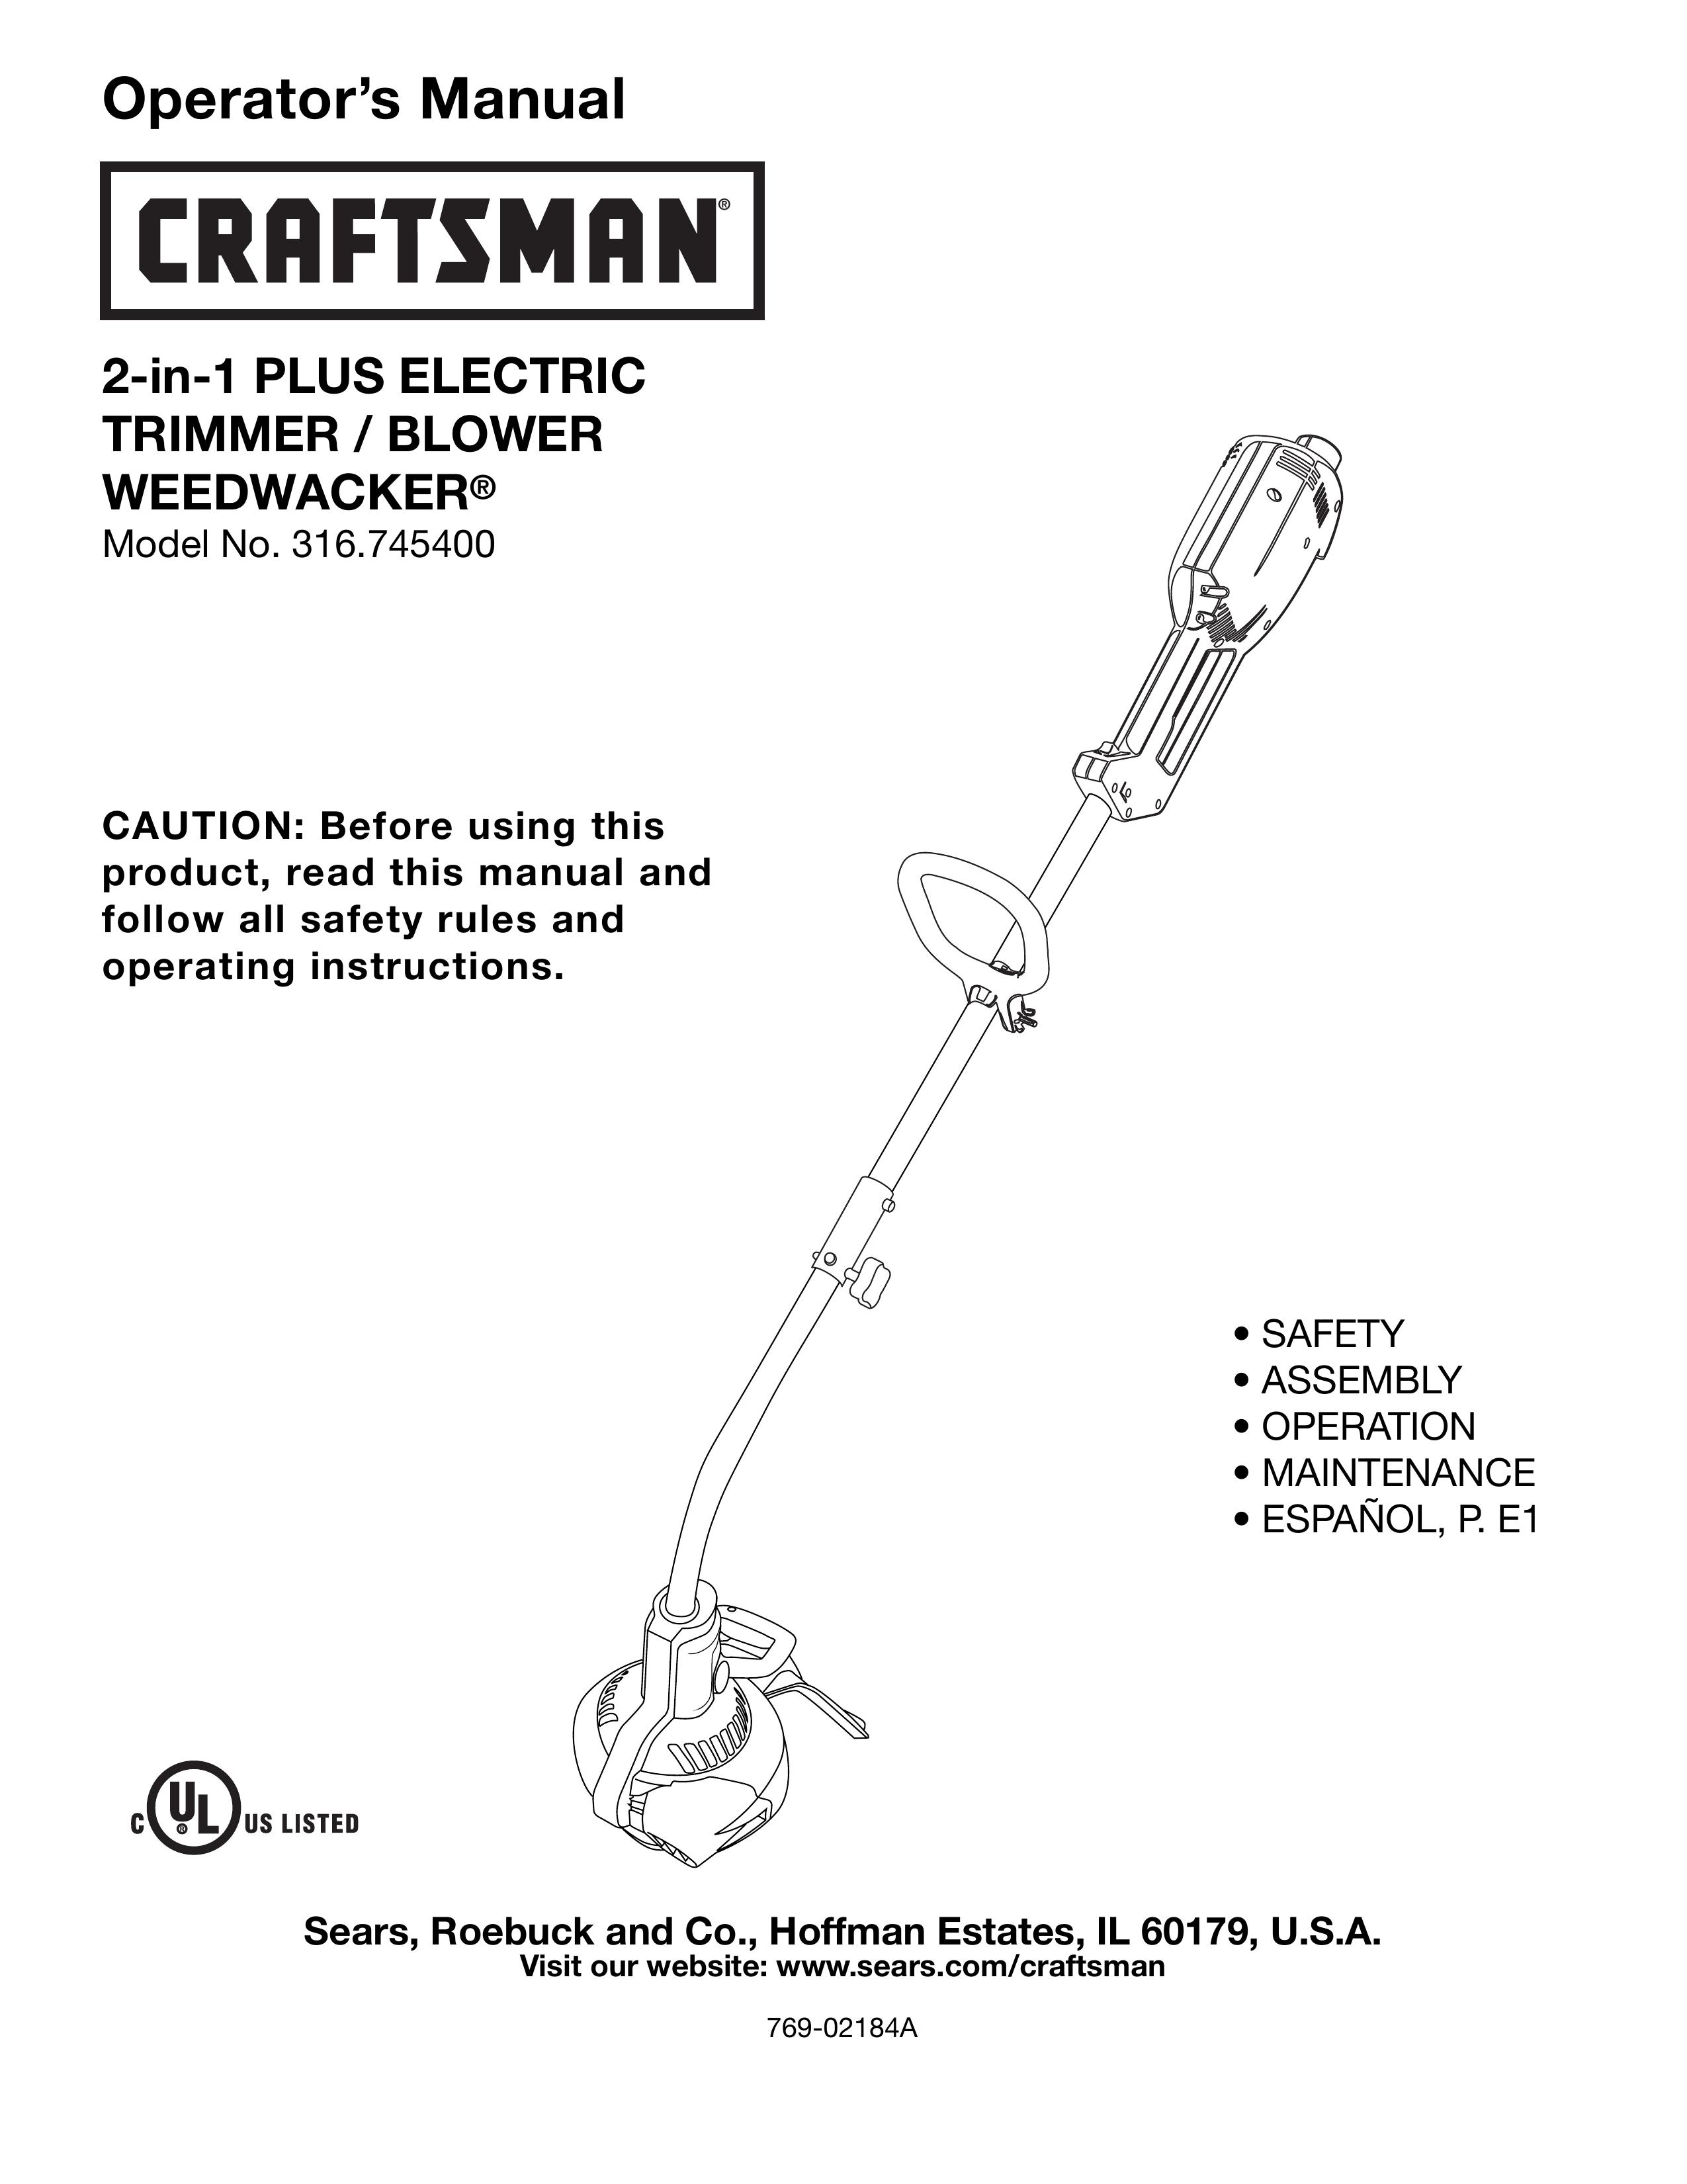 Craftsman 316.7454 Trimmer User Manual